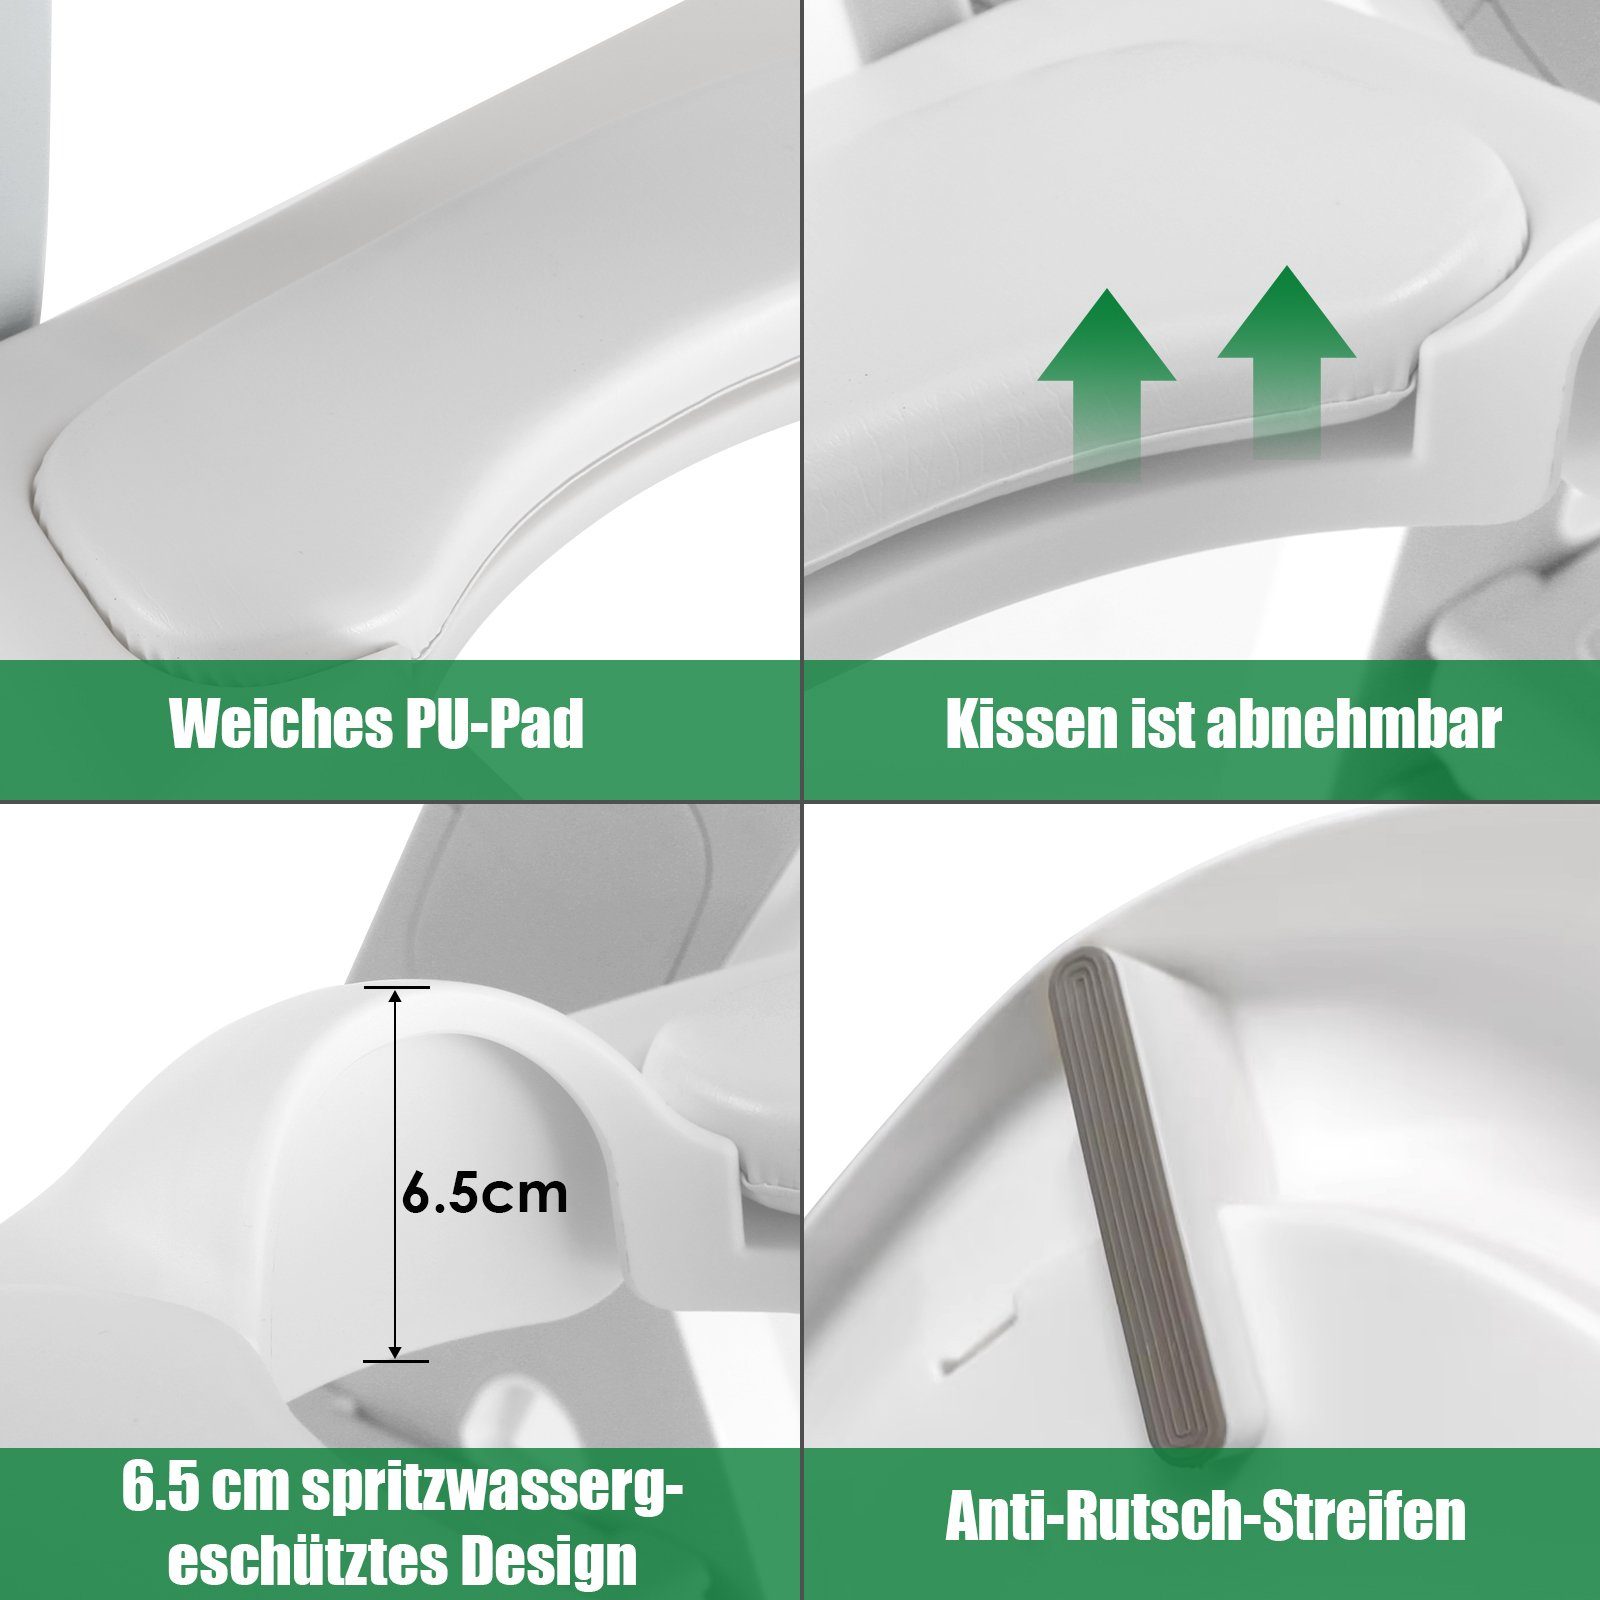 TLGREEN Toilettentrainer Toilettensitz Kinder Toilettensitz Tritthocker in mit 2 mit Grau 1 Baby Treppe